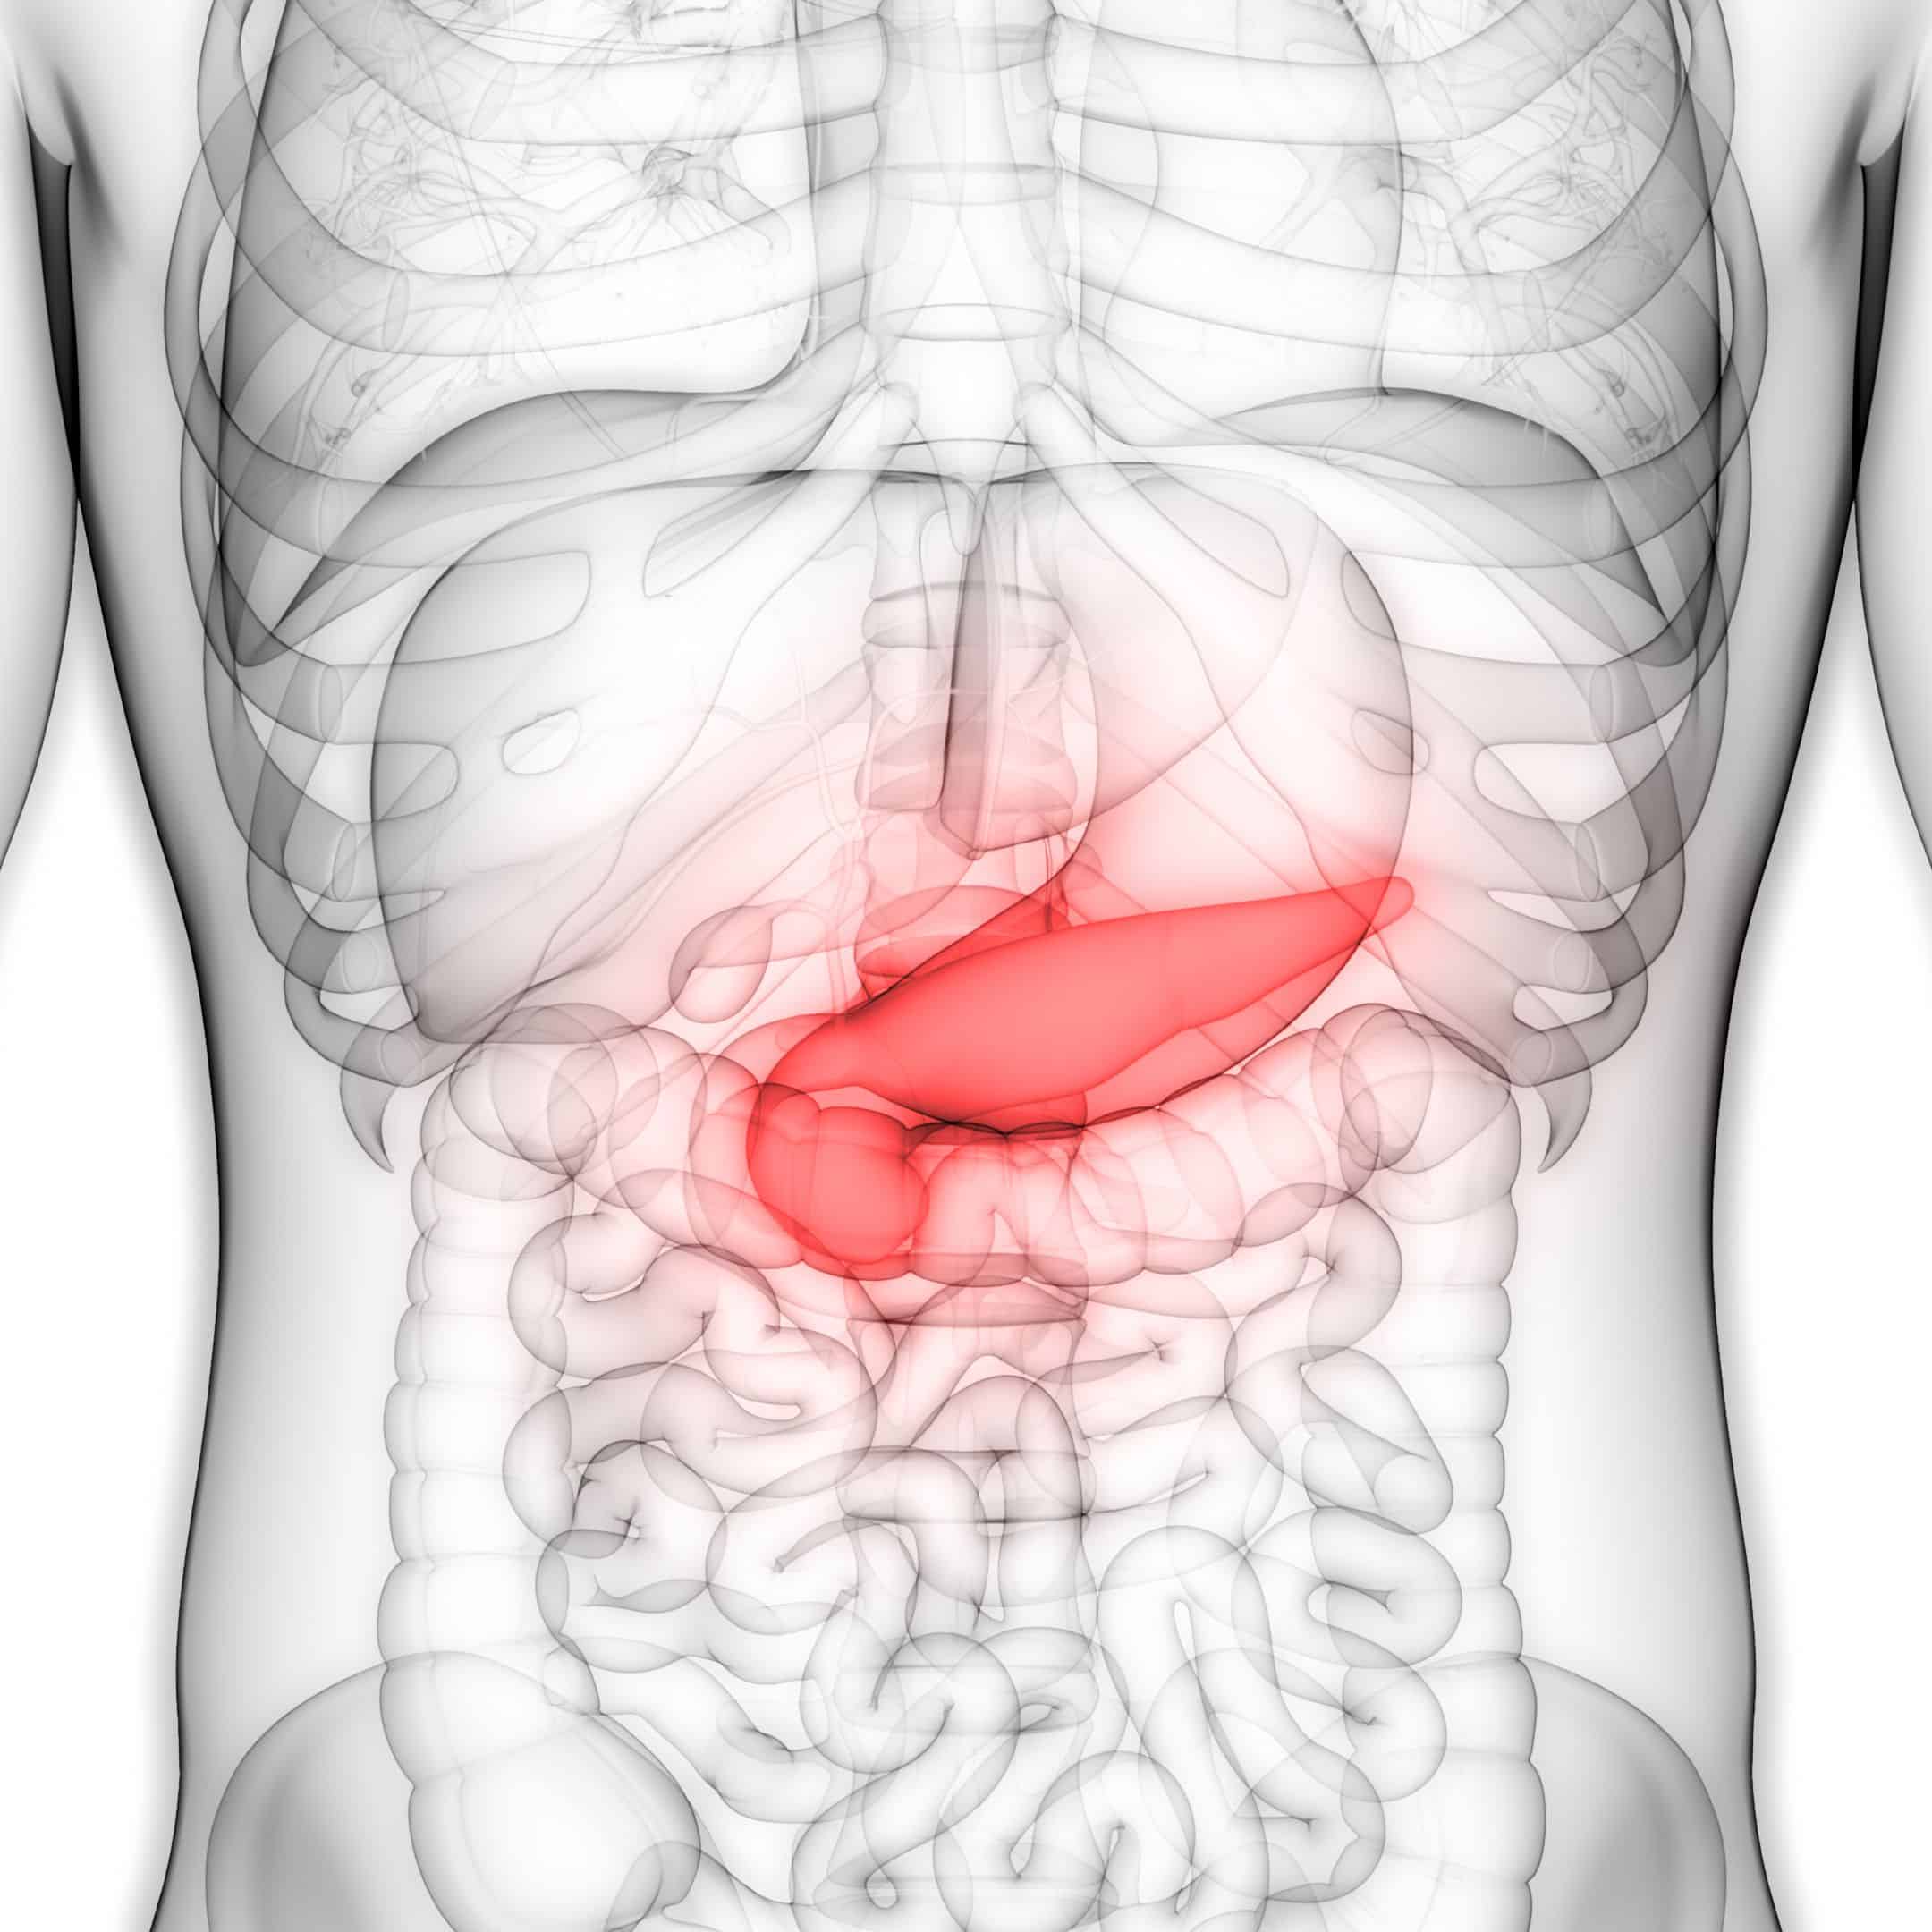 Gastrolog pancreas